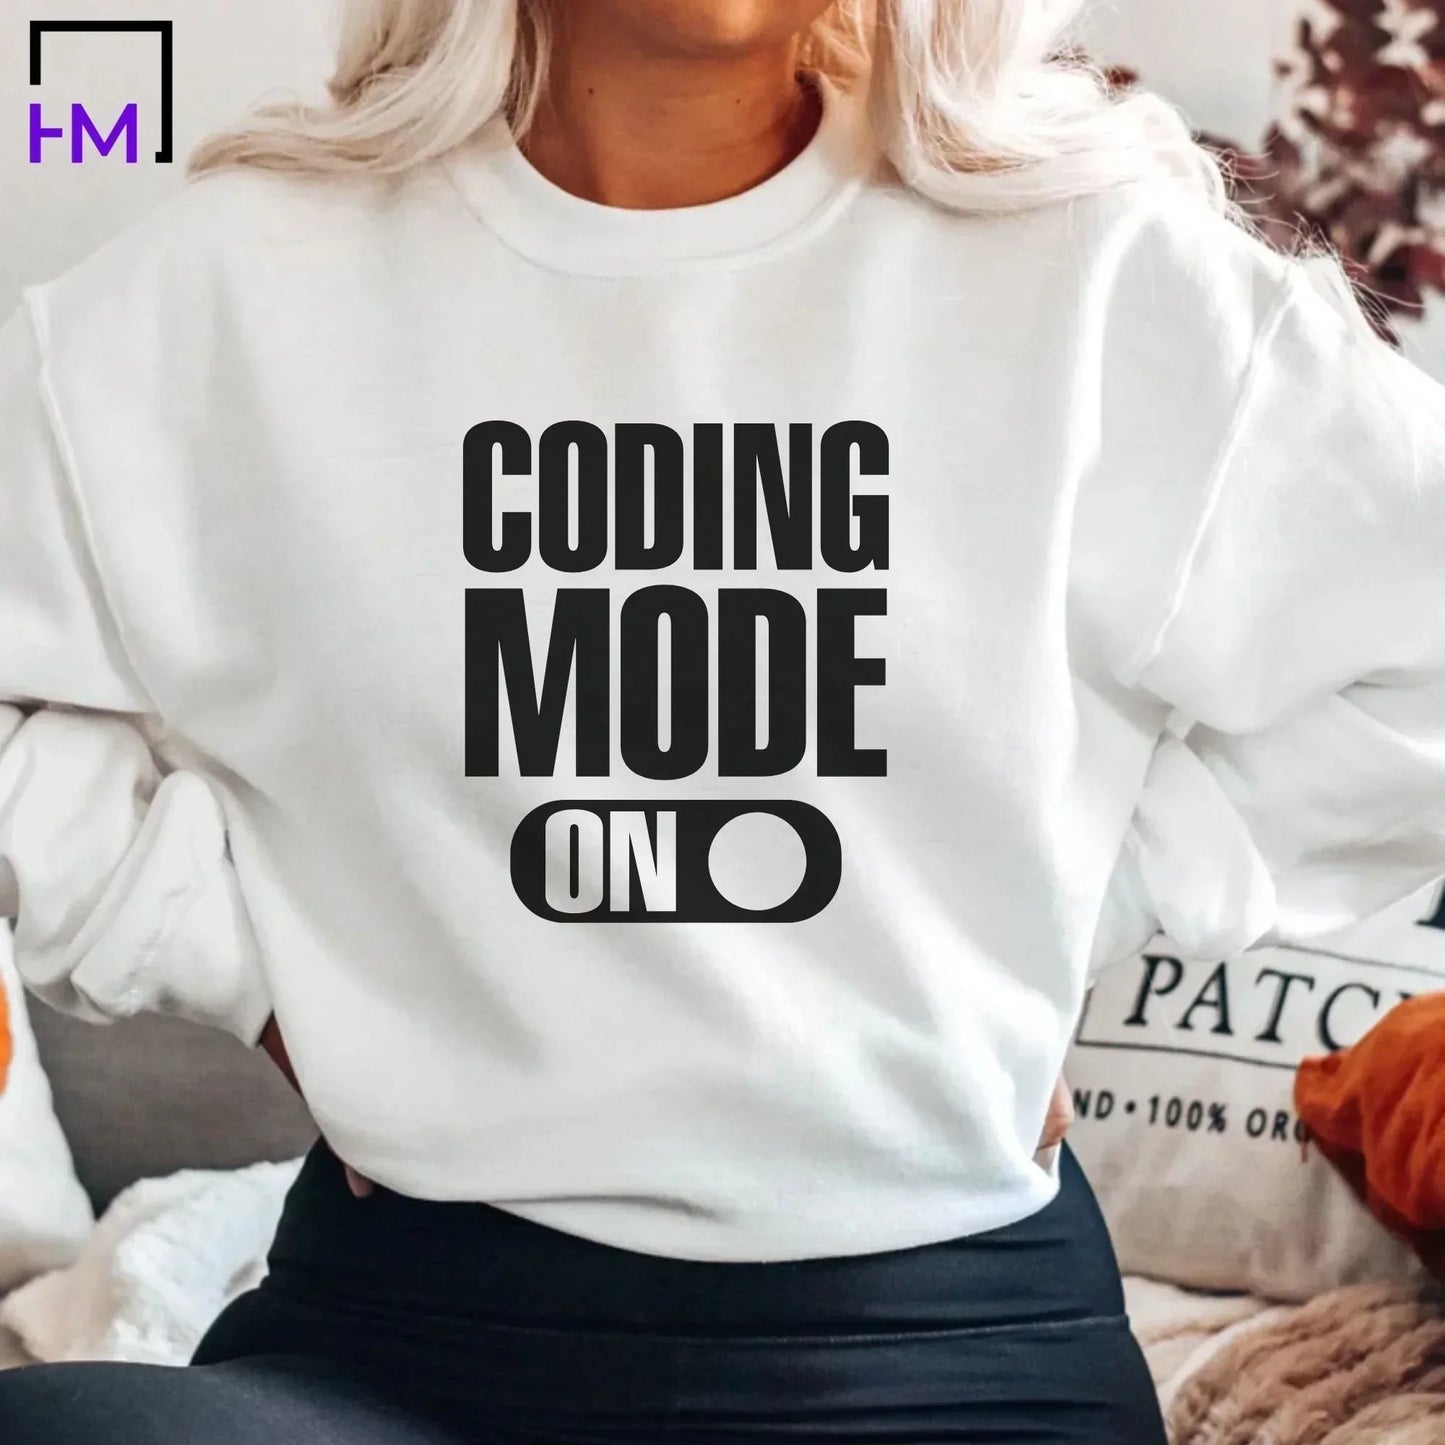 Coding Shirt, Technology Teacher Shirt, Teacher Gifts, Programmer Shirt, Gift for Programmer, STEM Teacher Shirt,Computer Science Gift Shirt